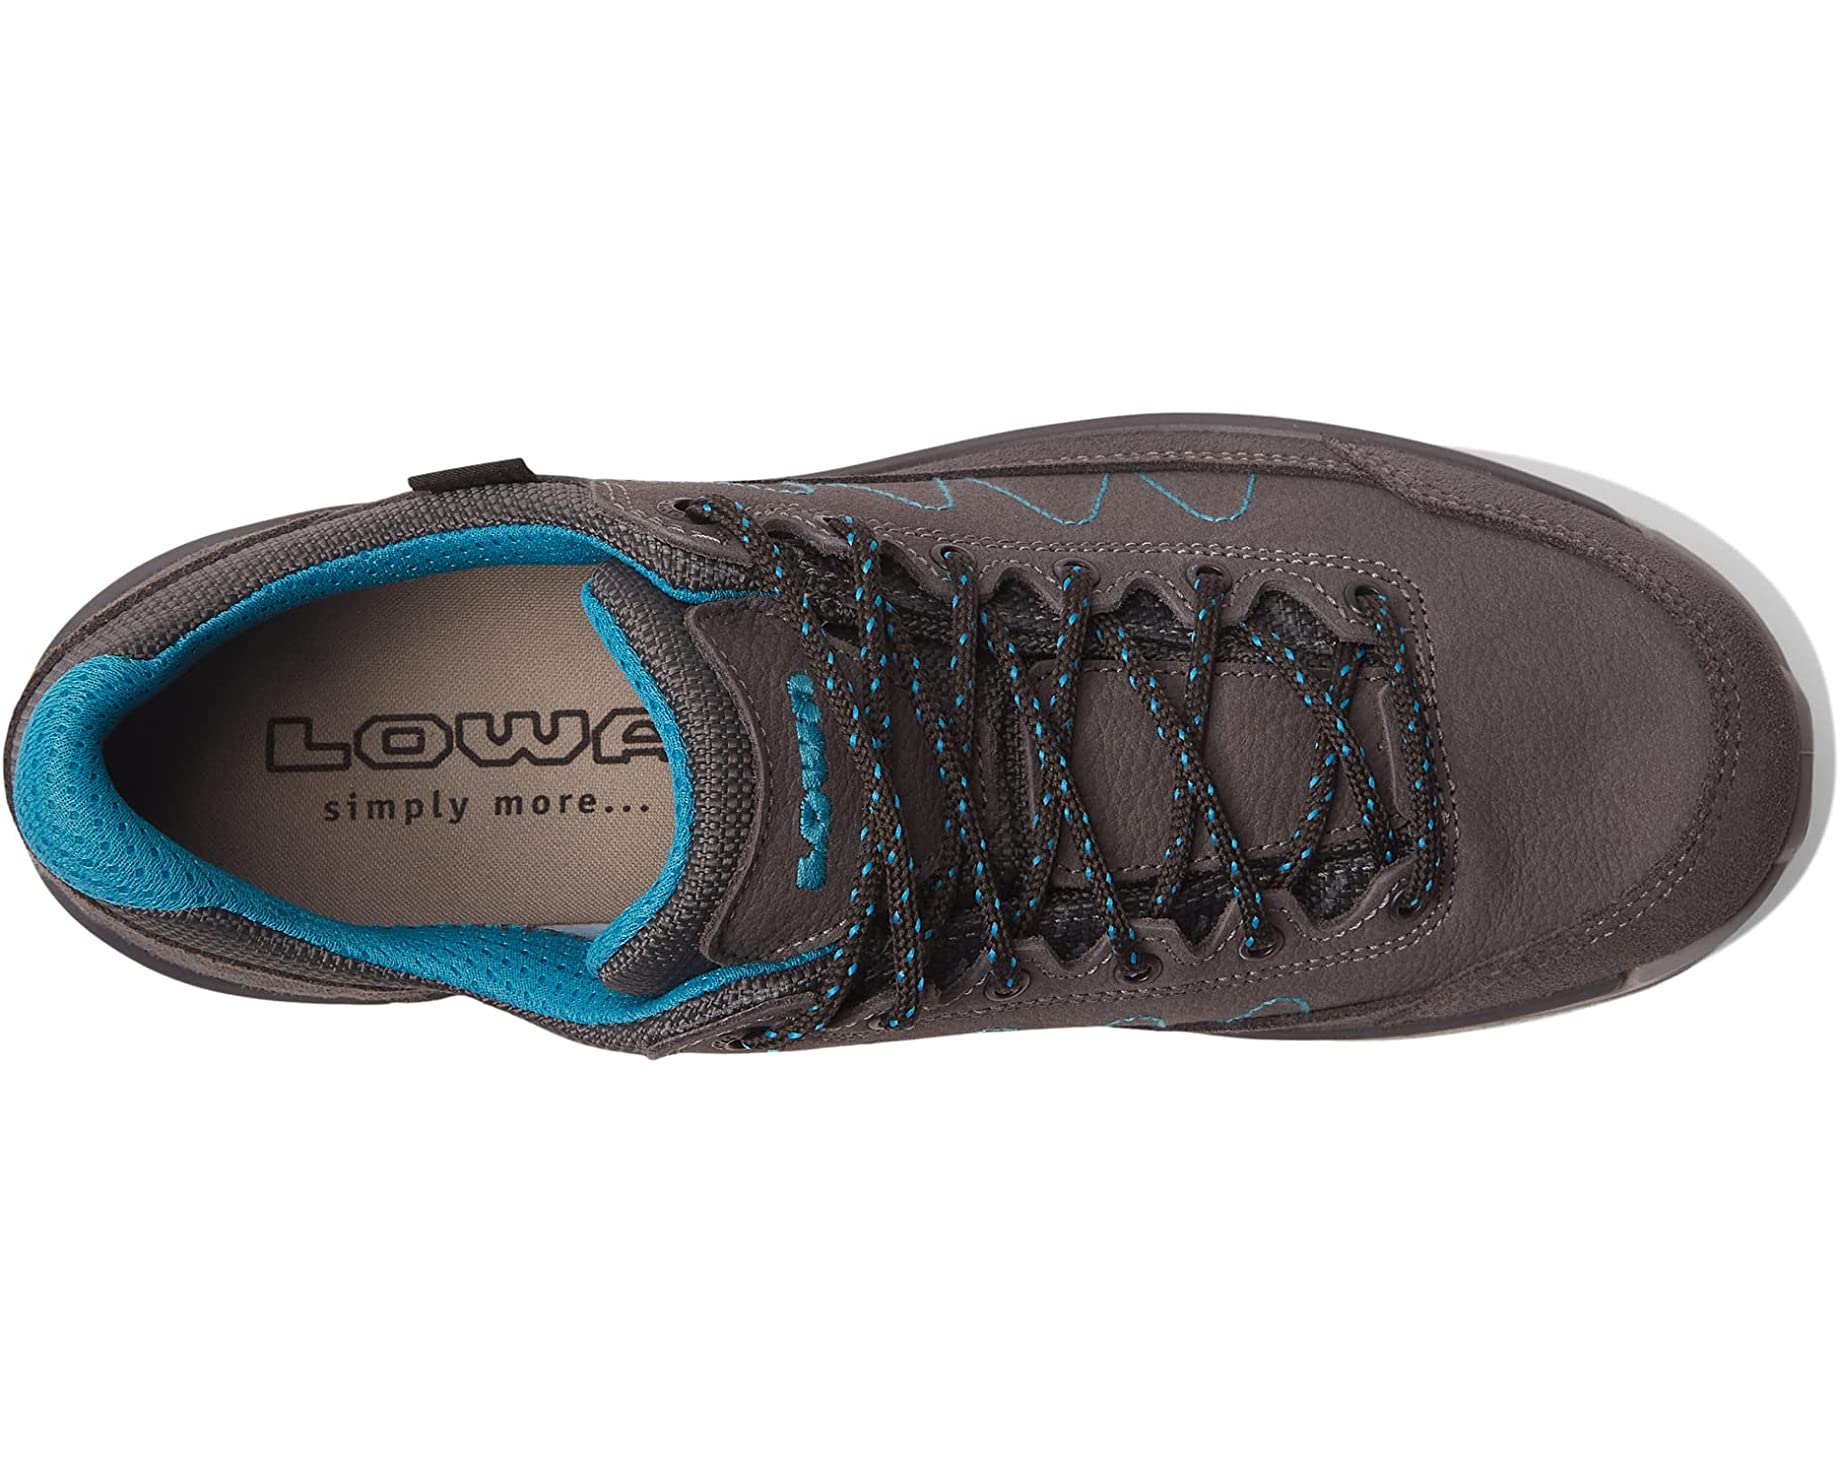 Кроссовки Toro Pro GTX Lo Lowa, графит мультиспортивная обувь lowa malta gtx lo цвет steelblue dune